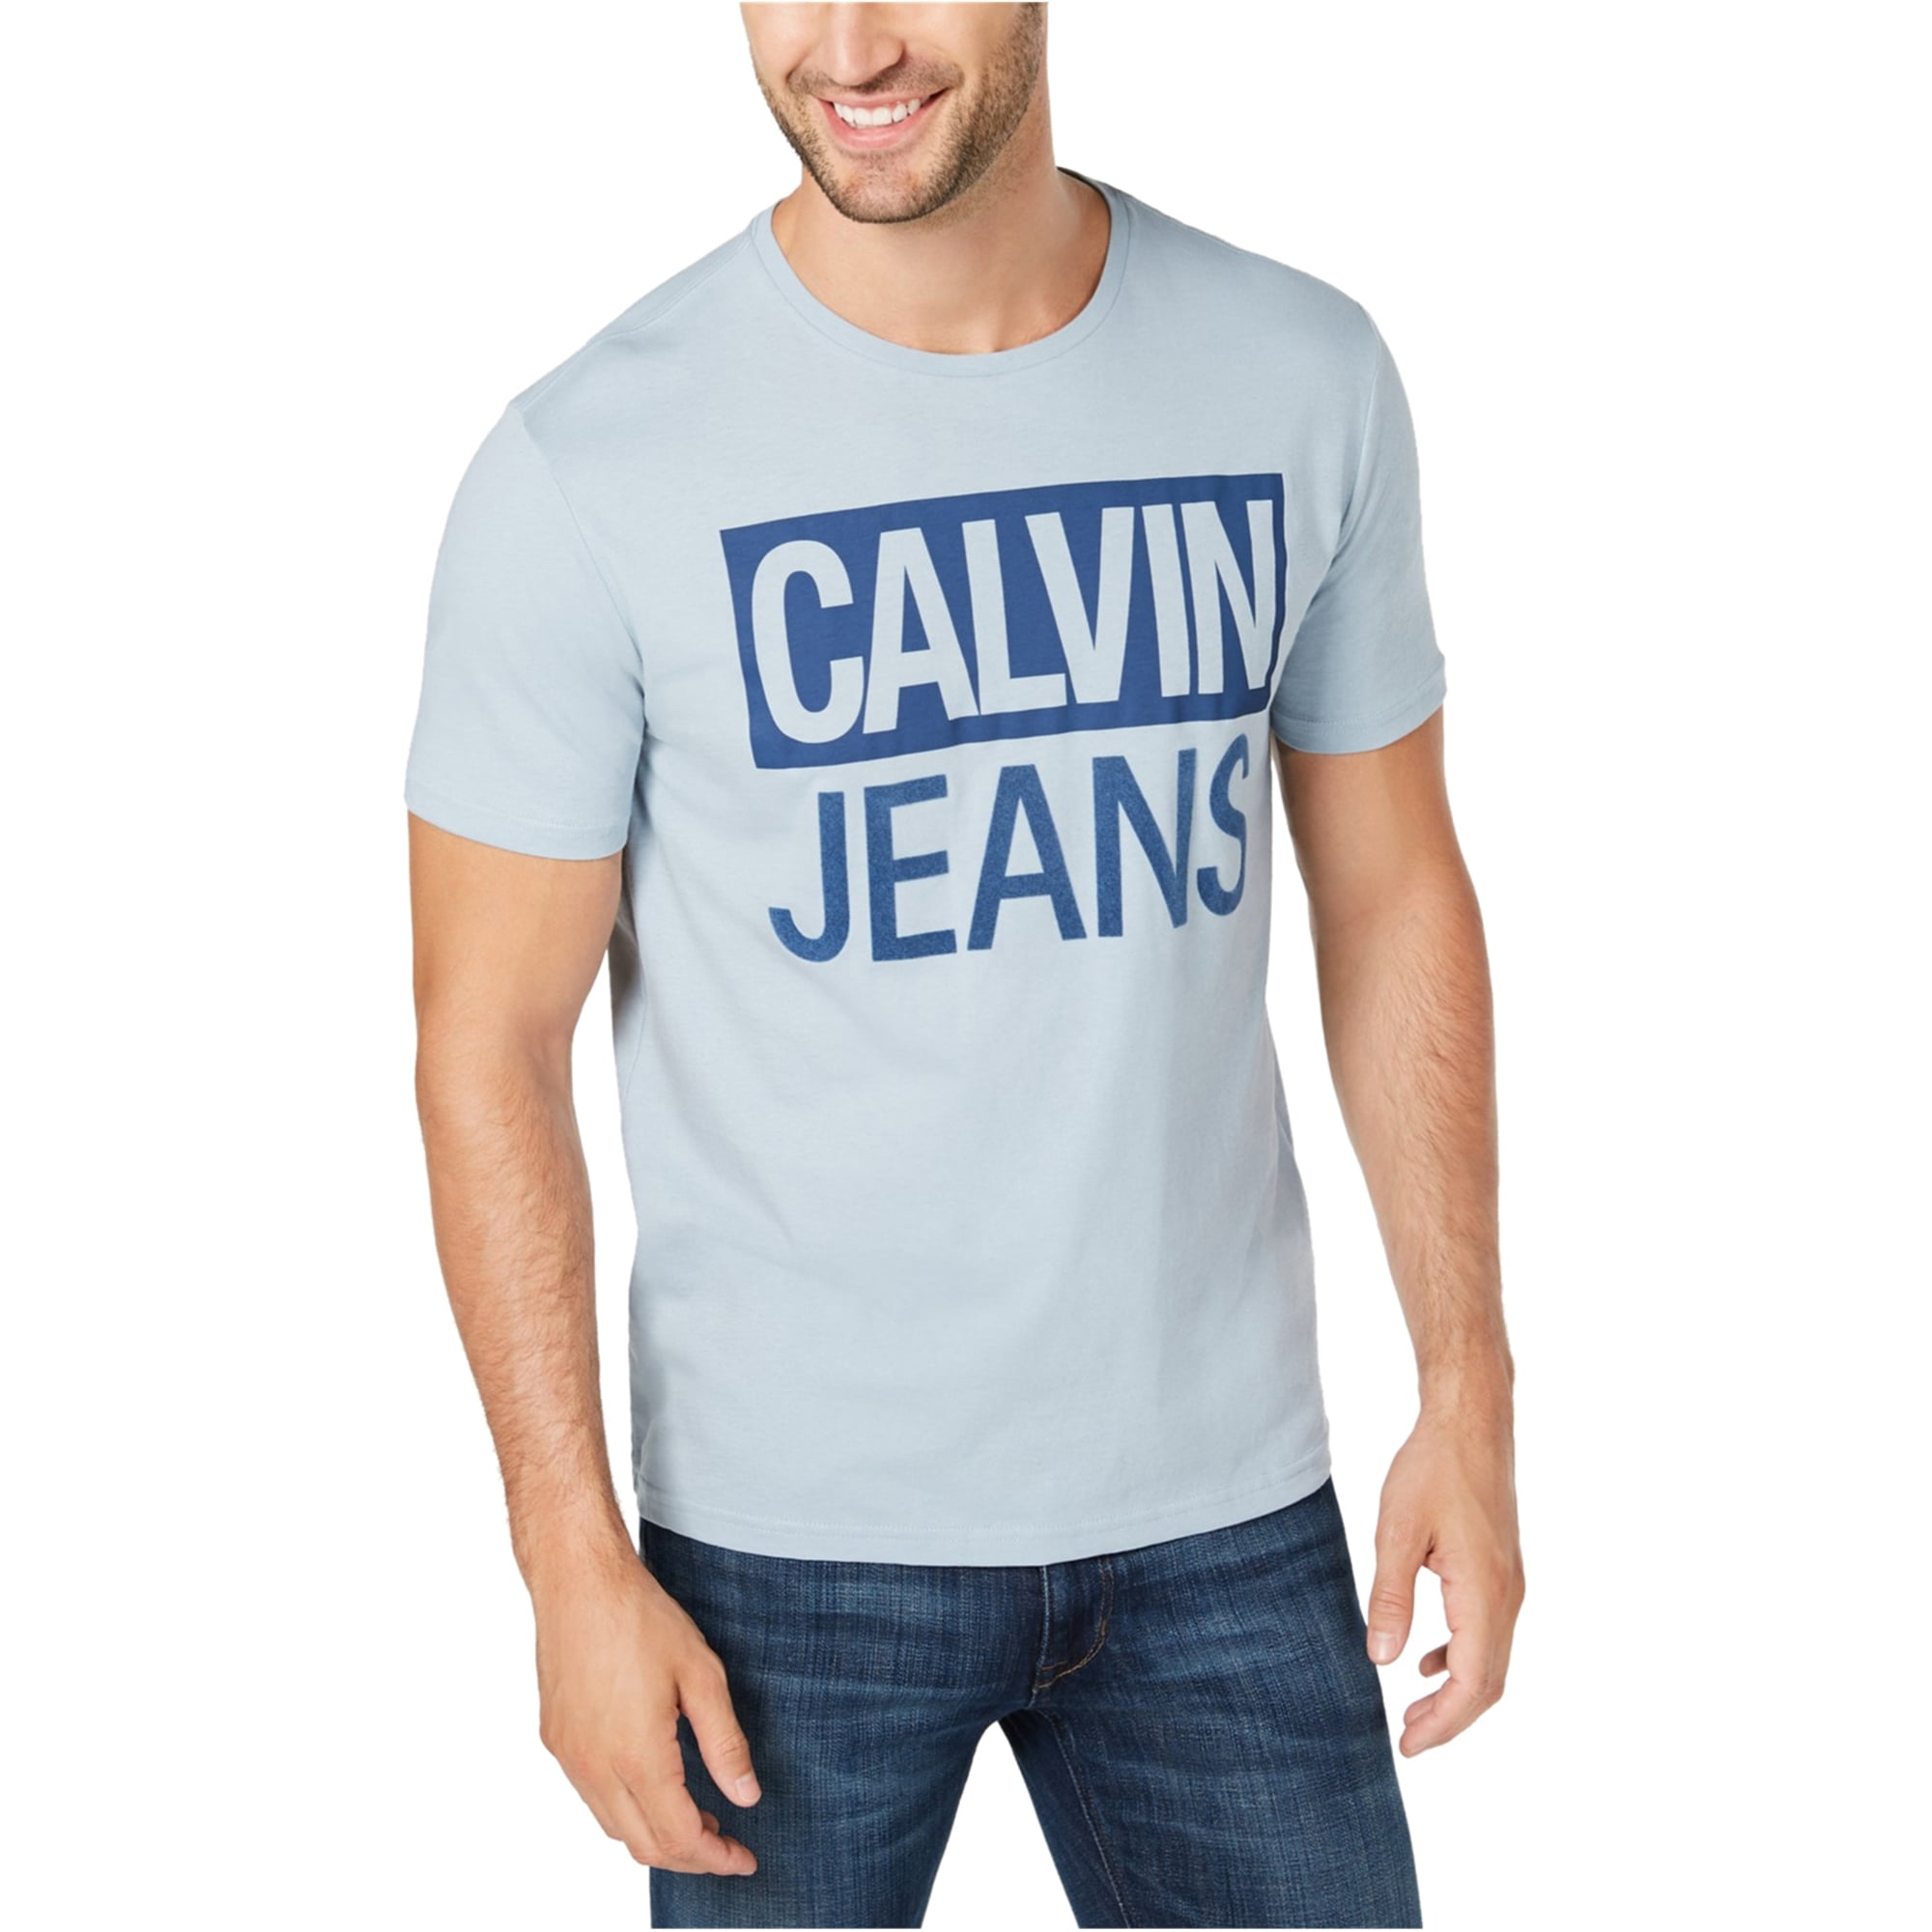 calvin klein blue t shirt